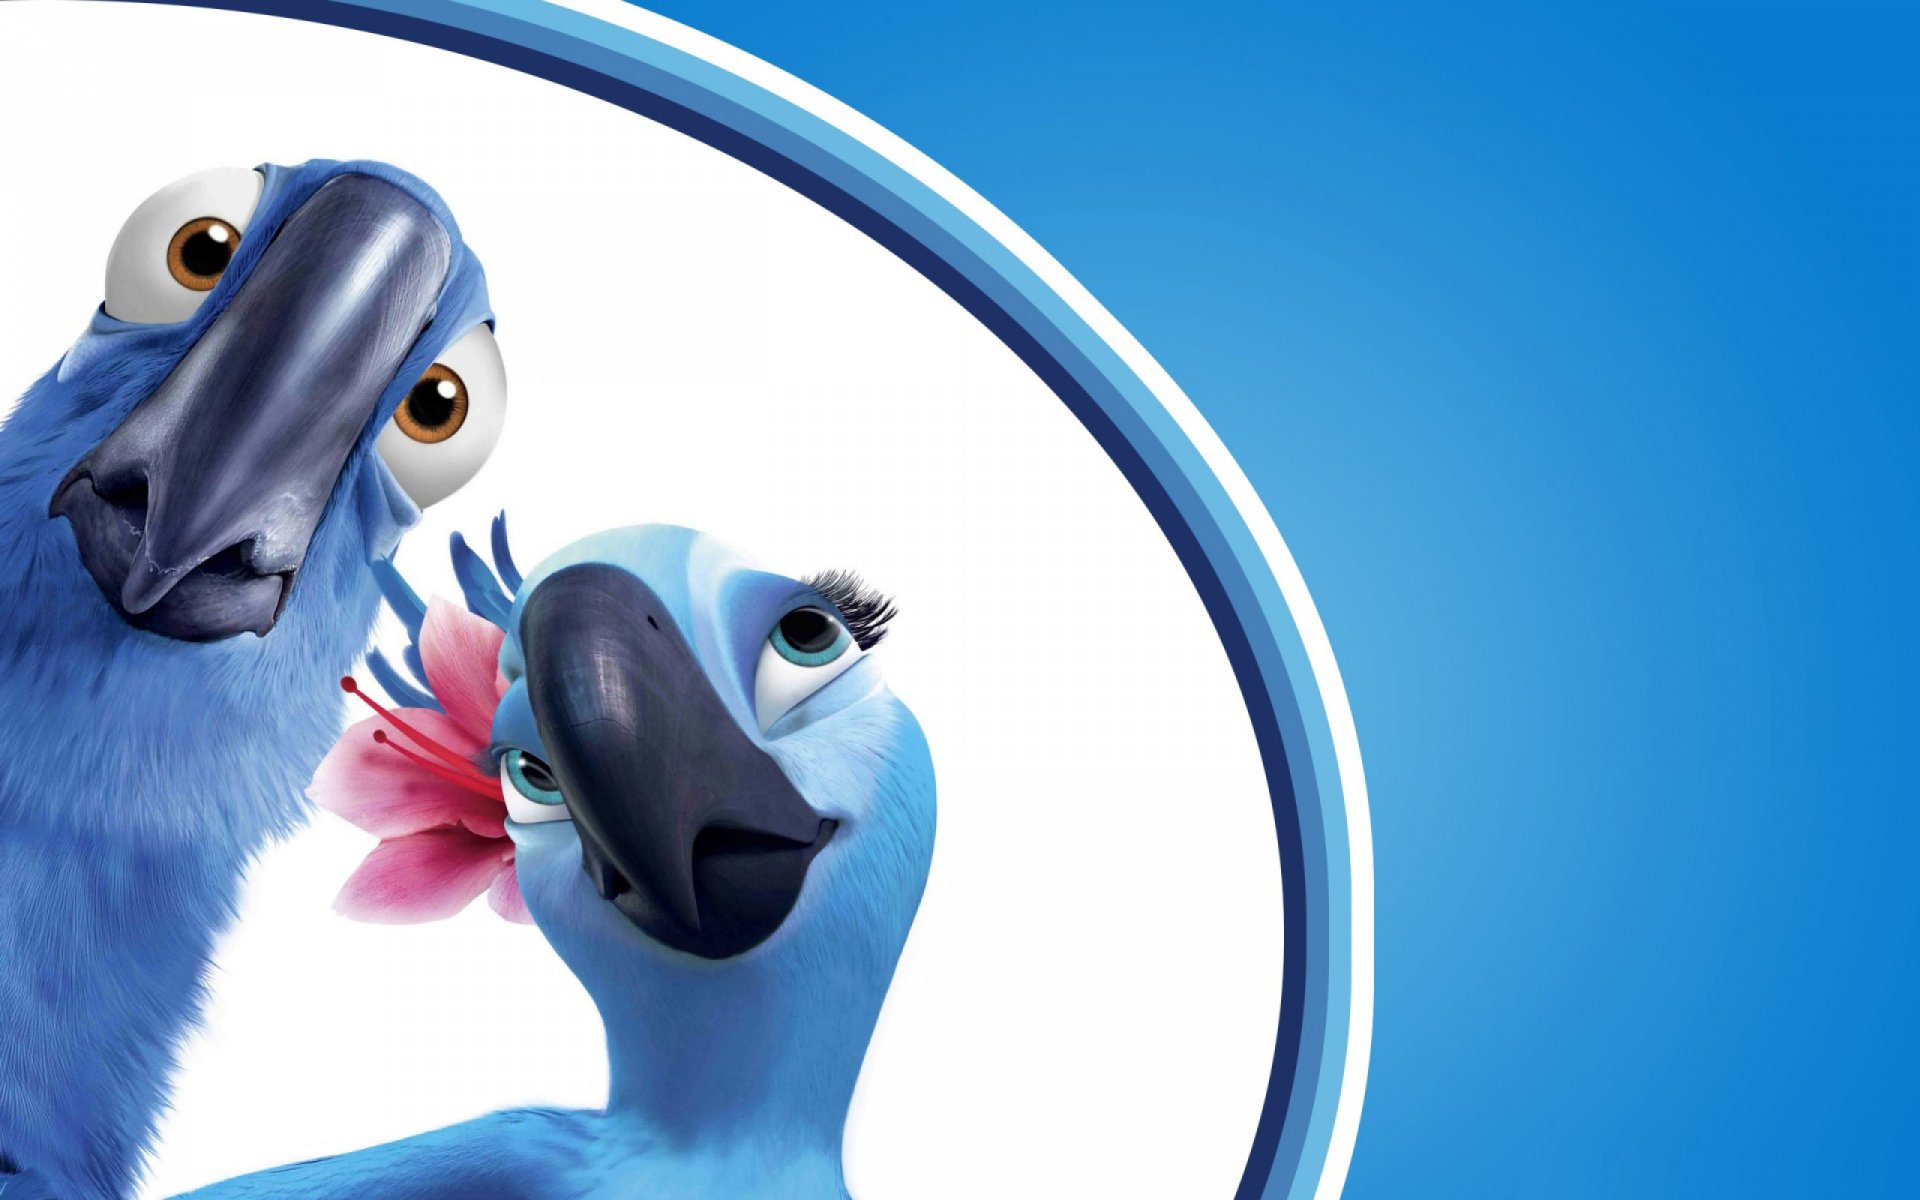 мультфильм рио рио-де-жанейро попугаи птицы голубой ара жемчужинка голубчик пара клюв удивление взгляд цветок фон